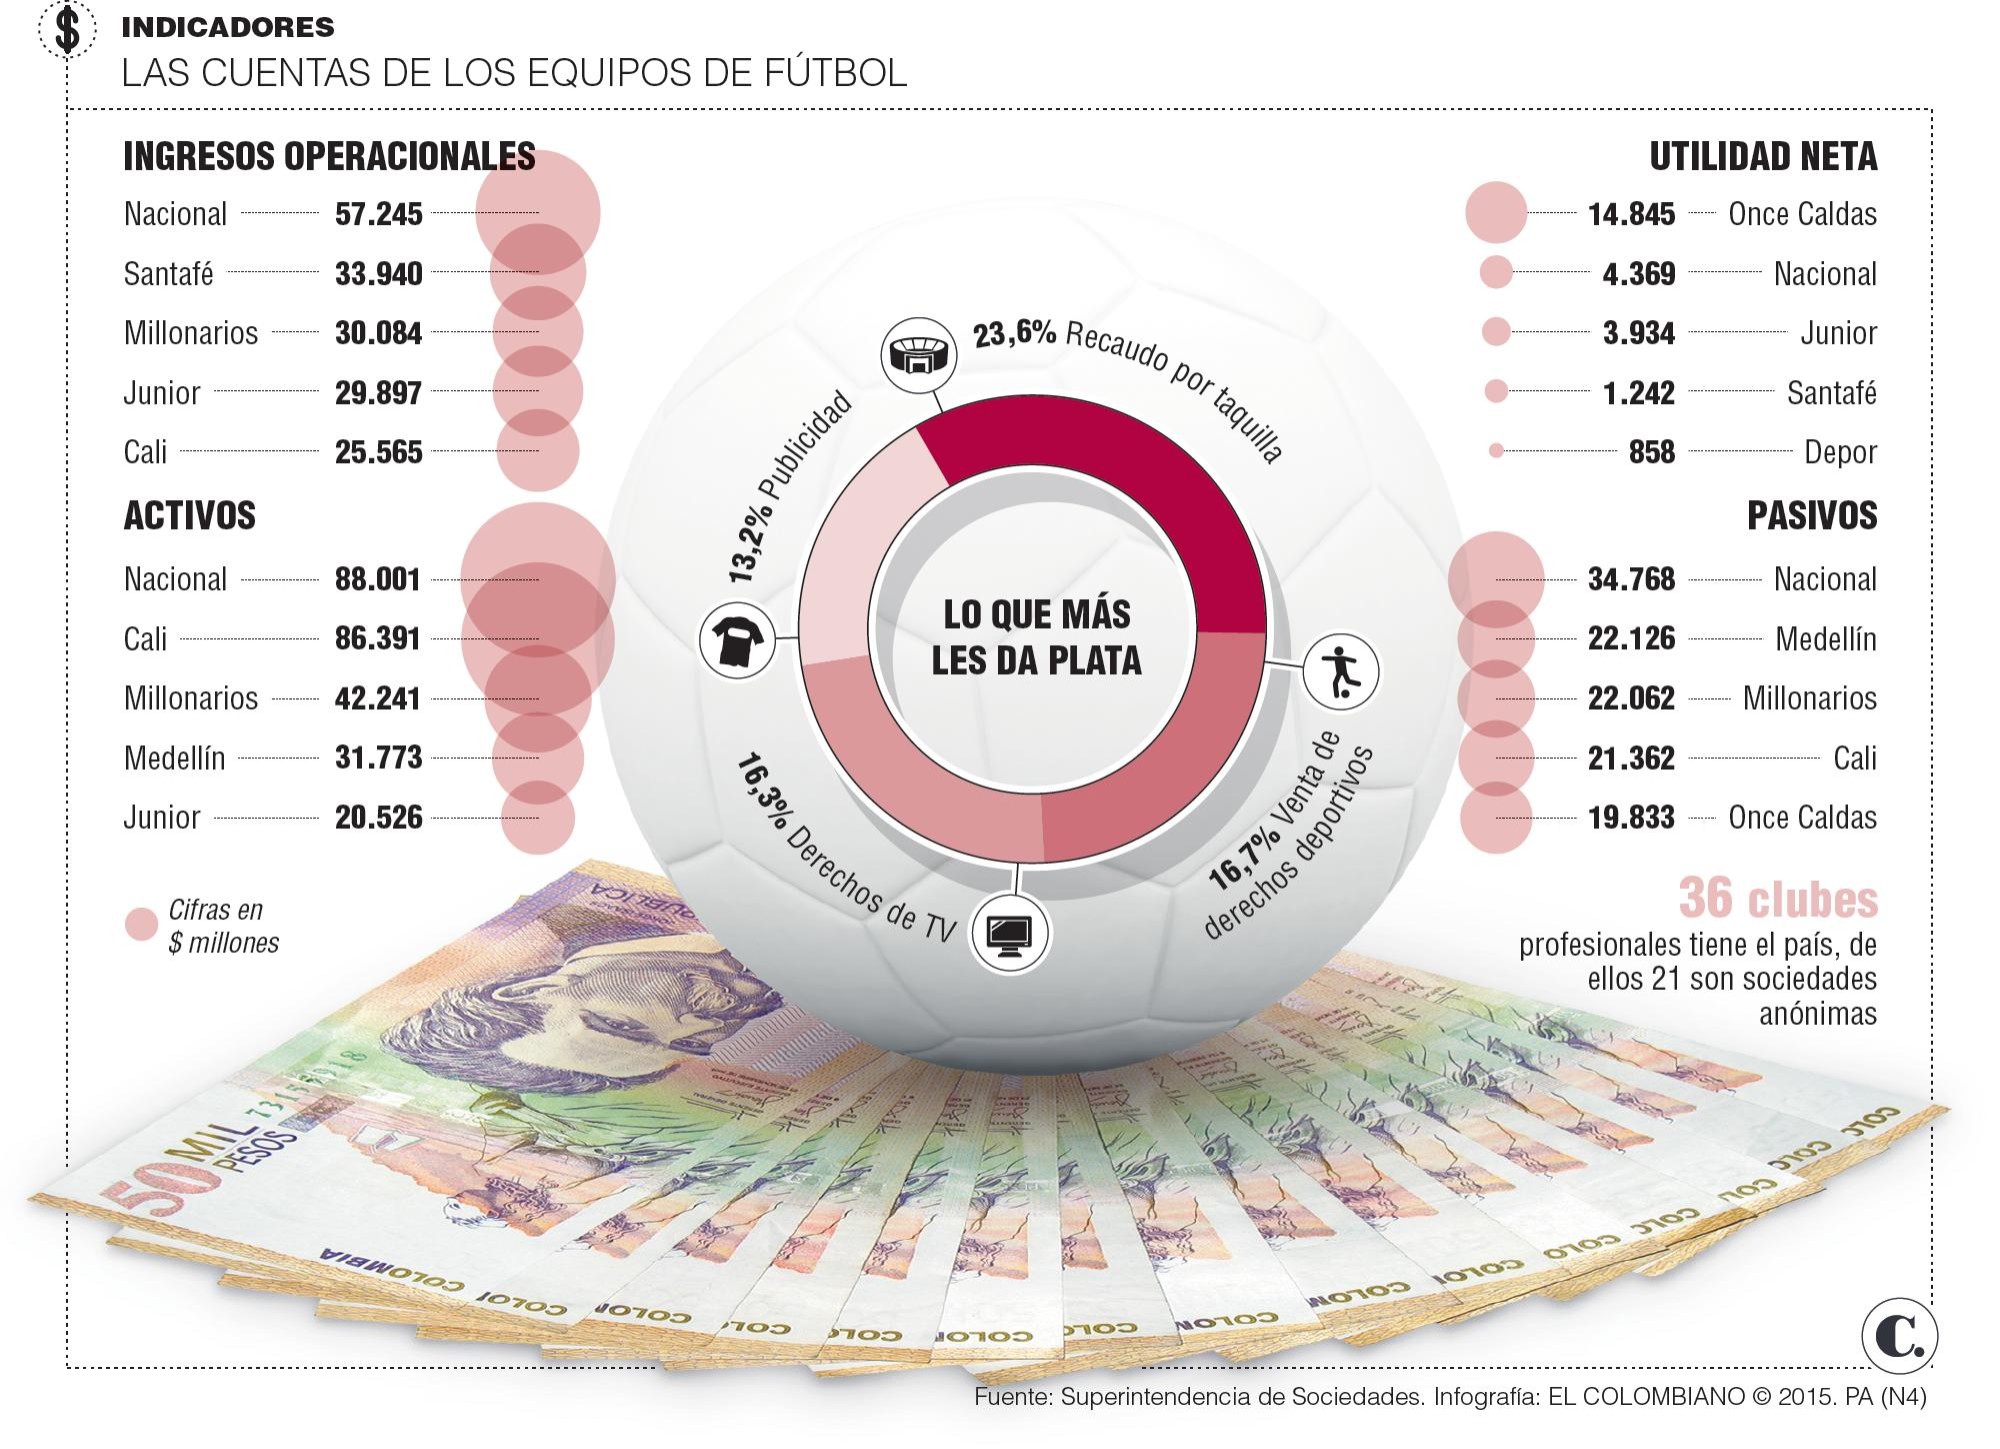 Nacional, rey en ingresos del fútbol colombiano